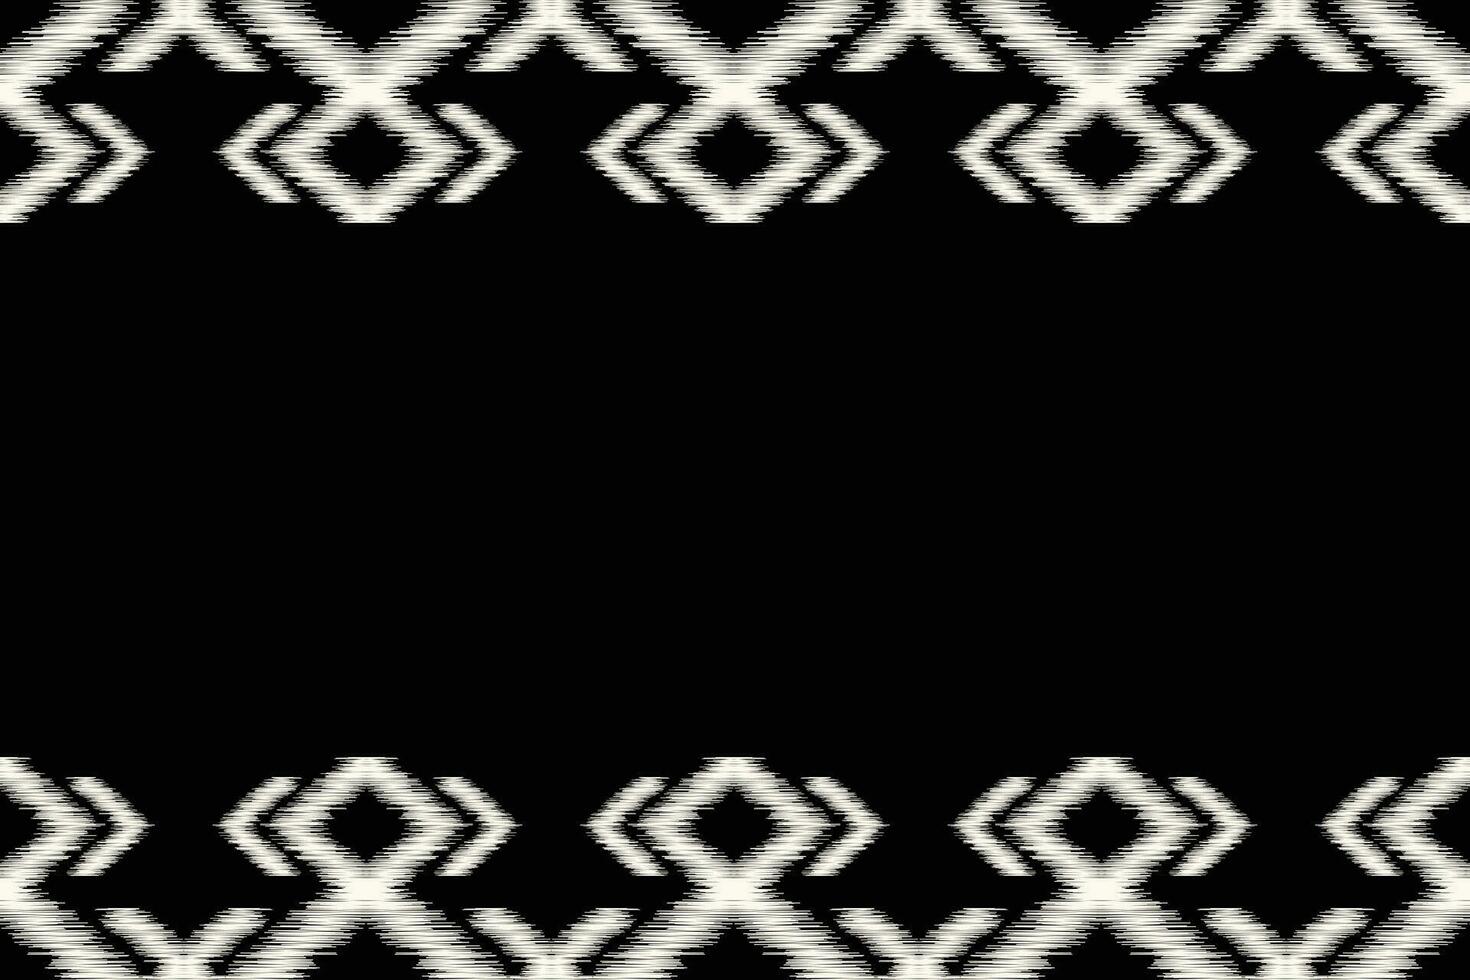 etnisch ikat kleding stof patroon meetkundig stijl.afrikaans ikat borduurwerk etnisch oosters patroon zwart achtergrond. abstract,vector,illustratie.textuur,kleding,lijst,decoratie,tapijt,motief. vector